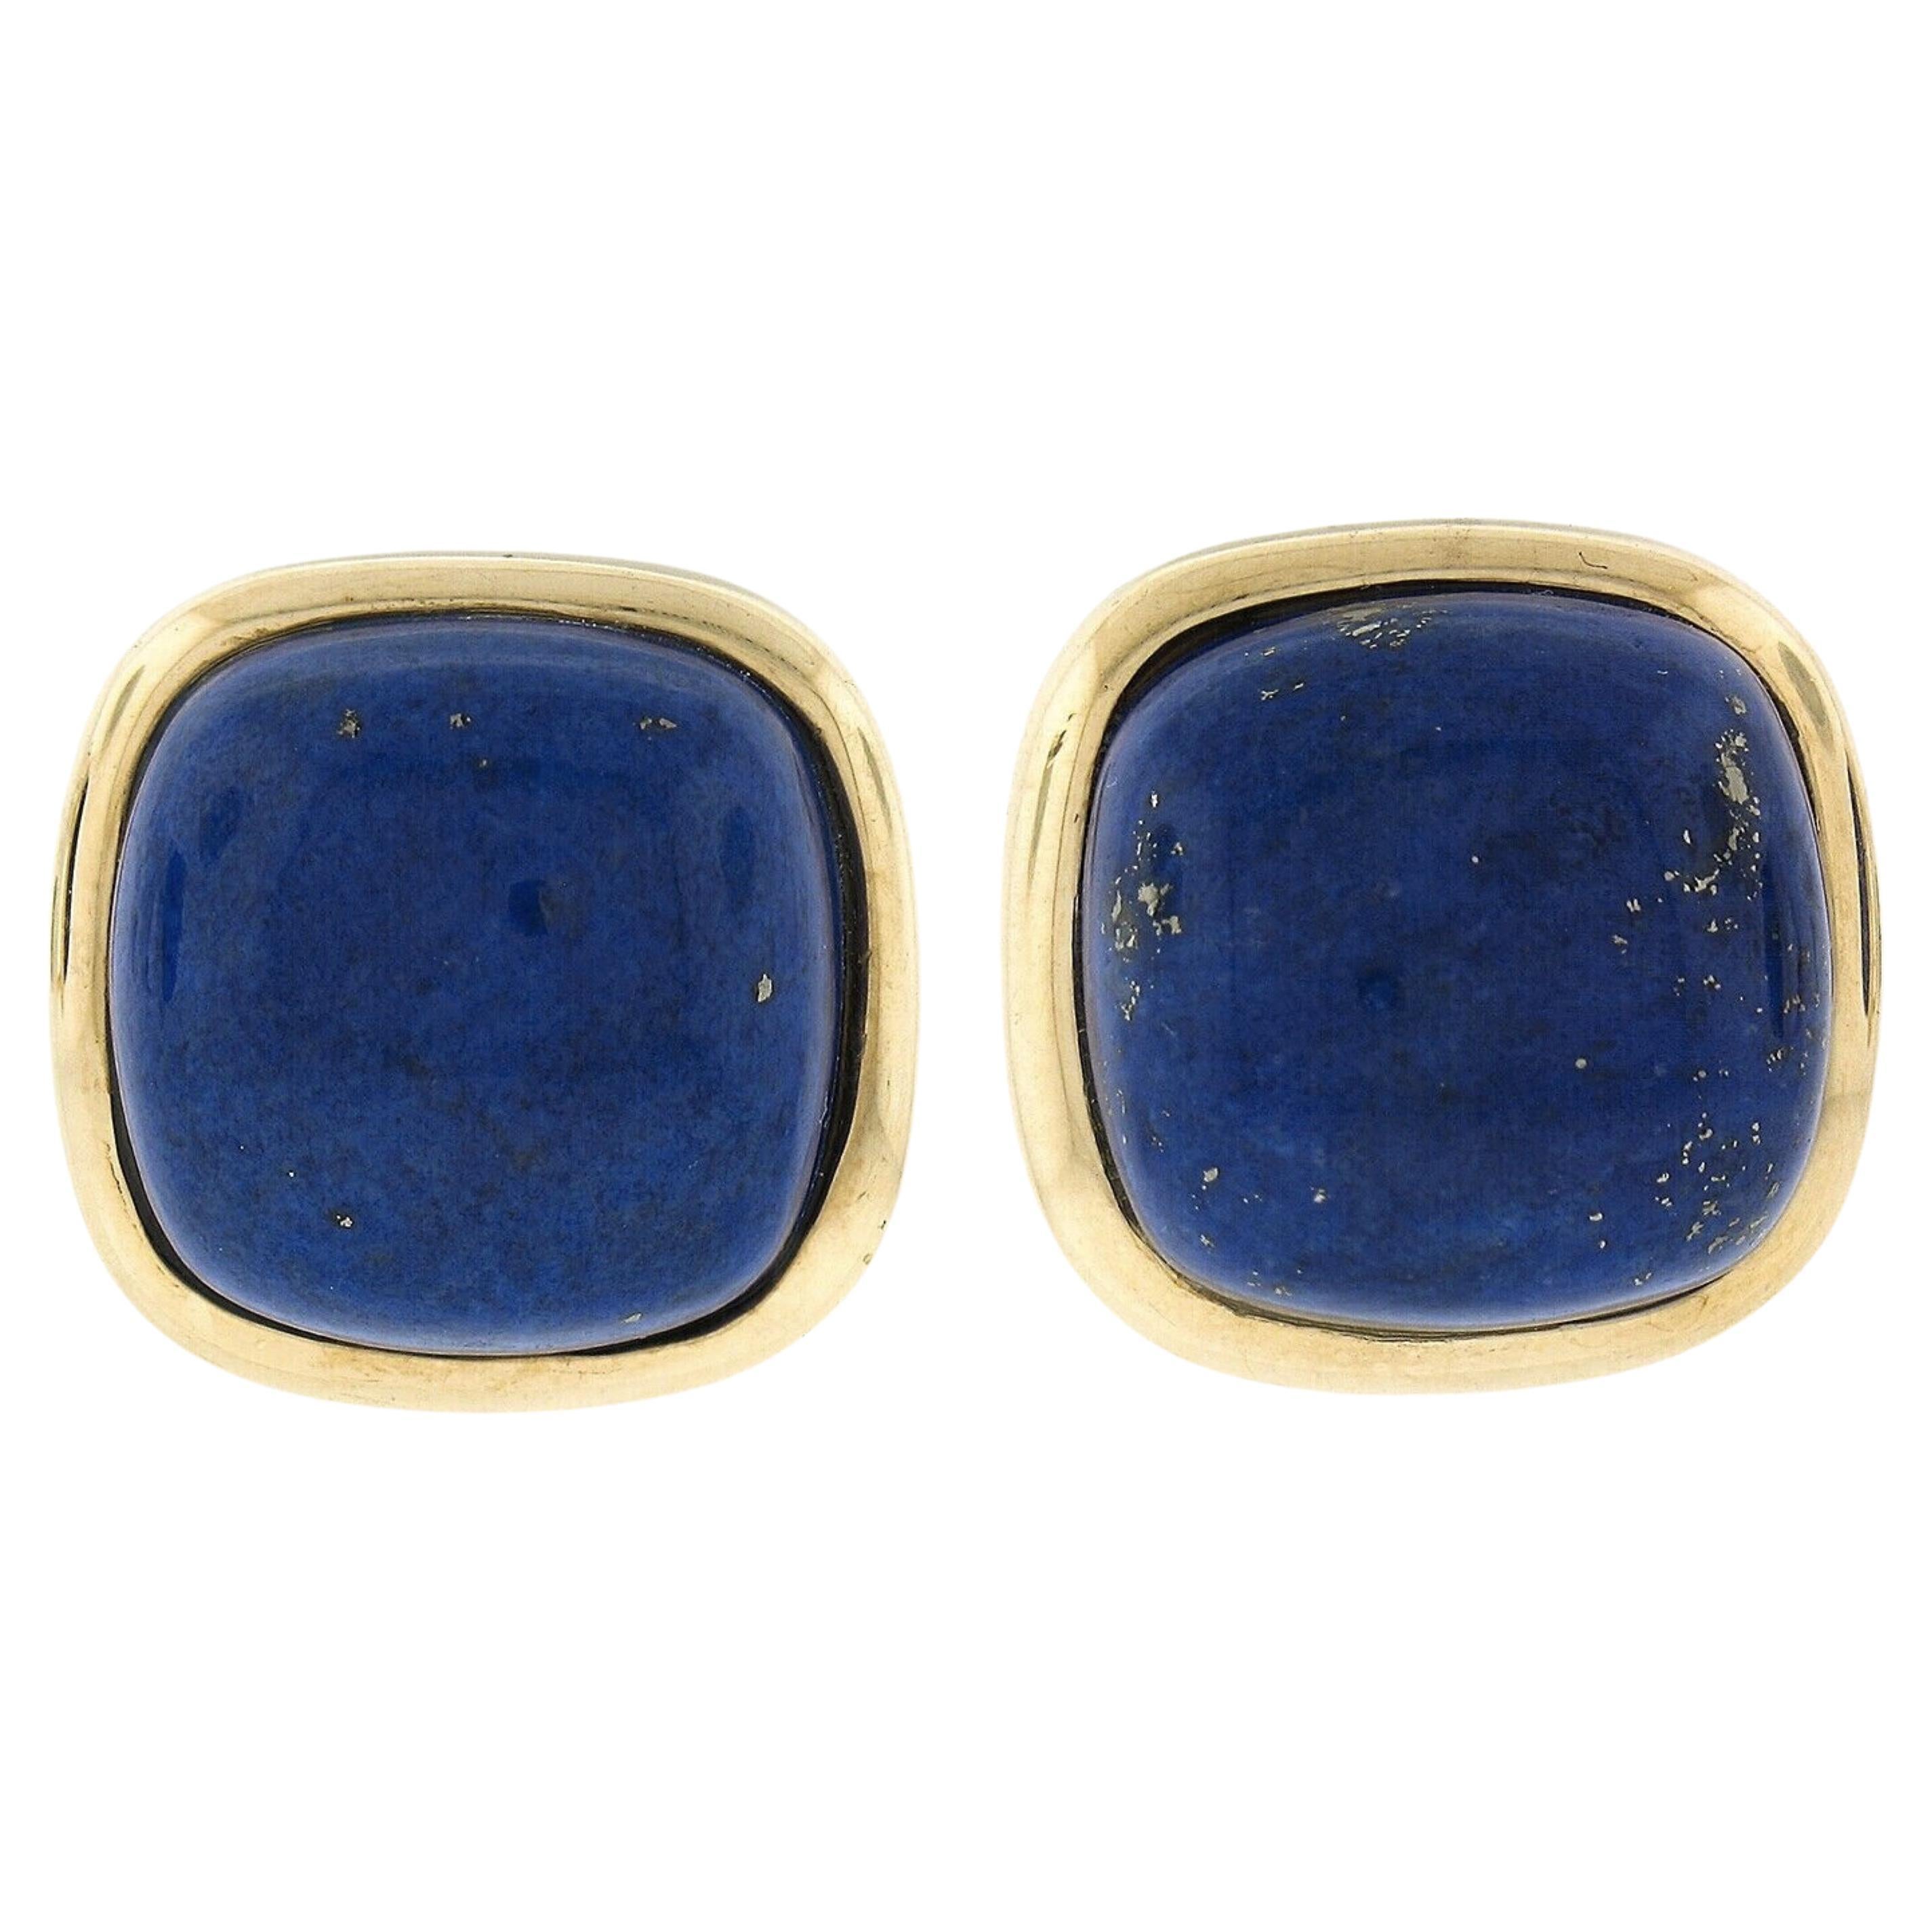 Large 14K Gold Cushion Cabochon Polished Lapis Lazuli Bezel Set Button Earrings